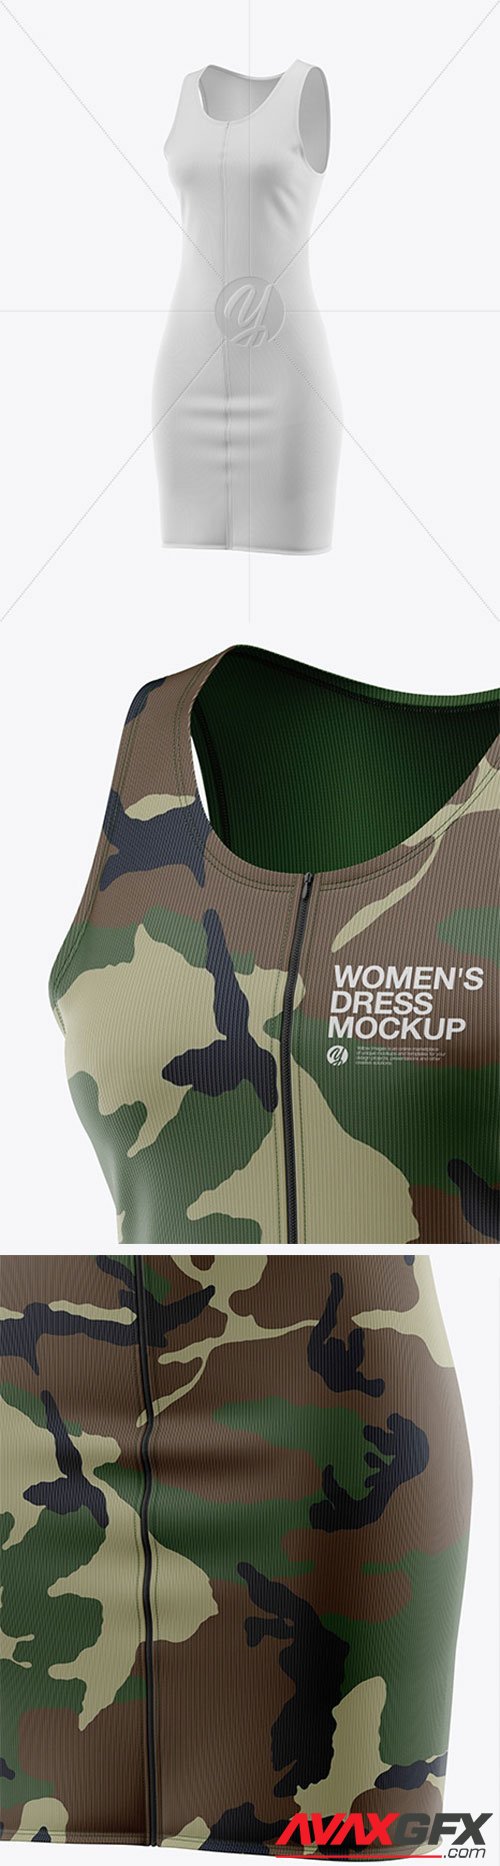 Women's Dress Mockup 62327